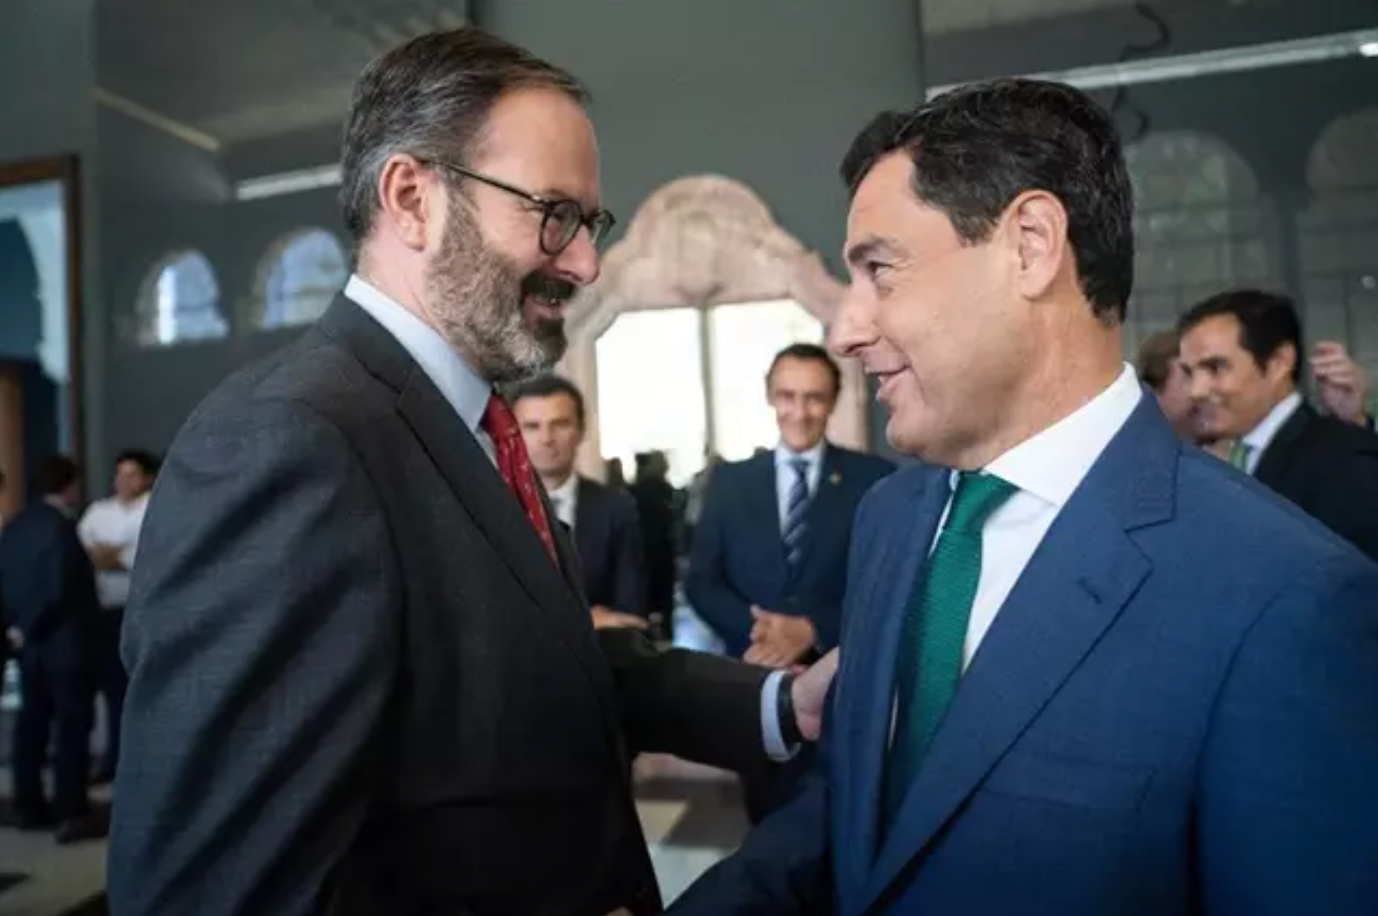  Adolfo Molina, en una foto junto al presidente de la Junta de Andalucía, Juanma Moreno. Foto: Europapress 